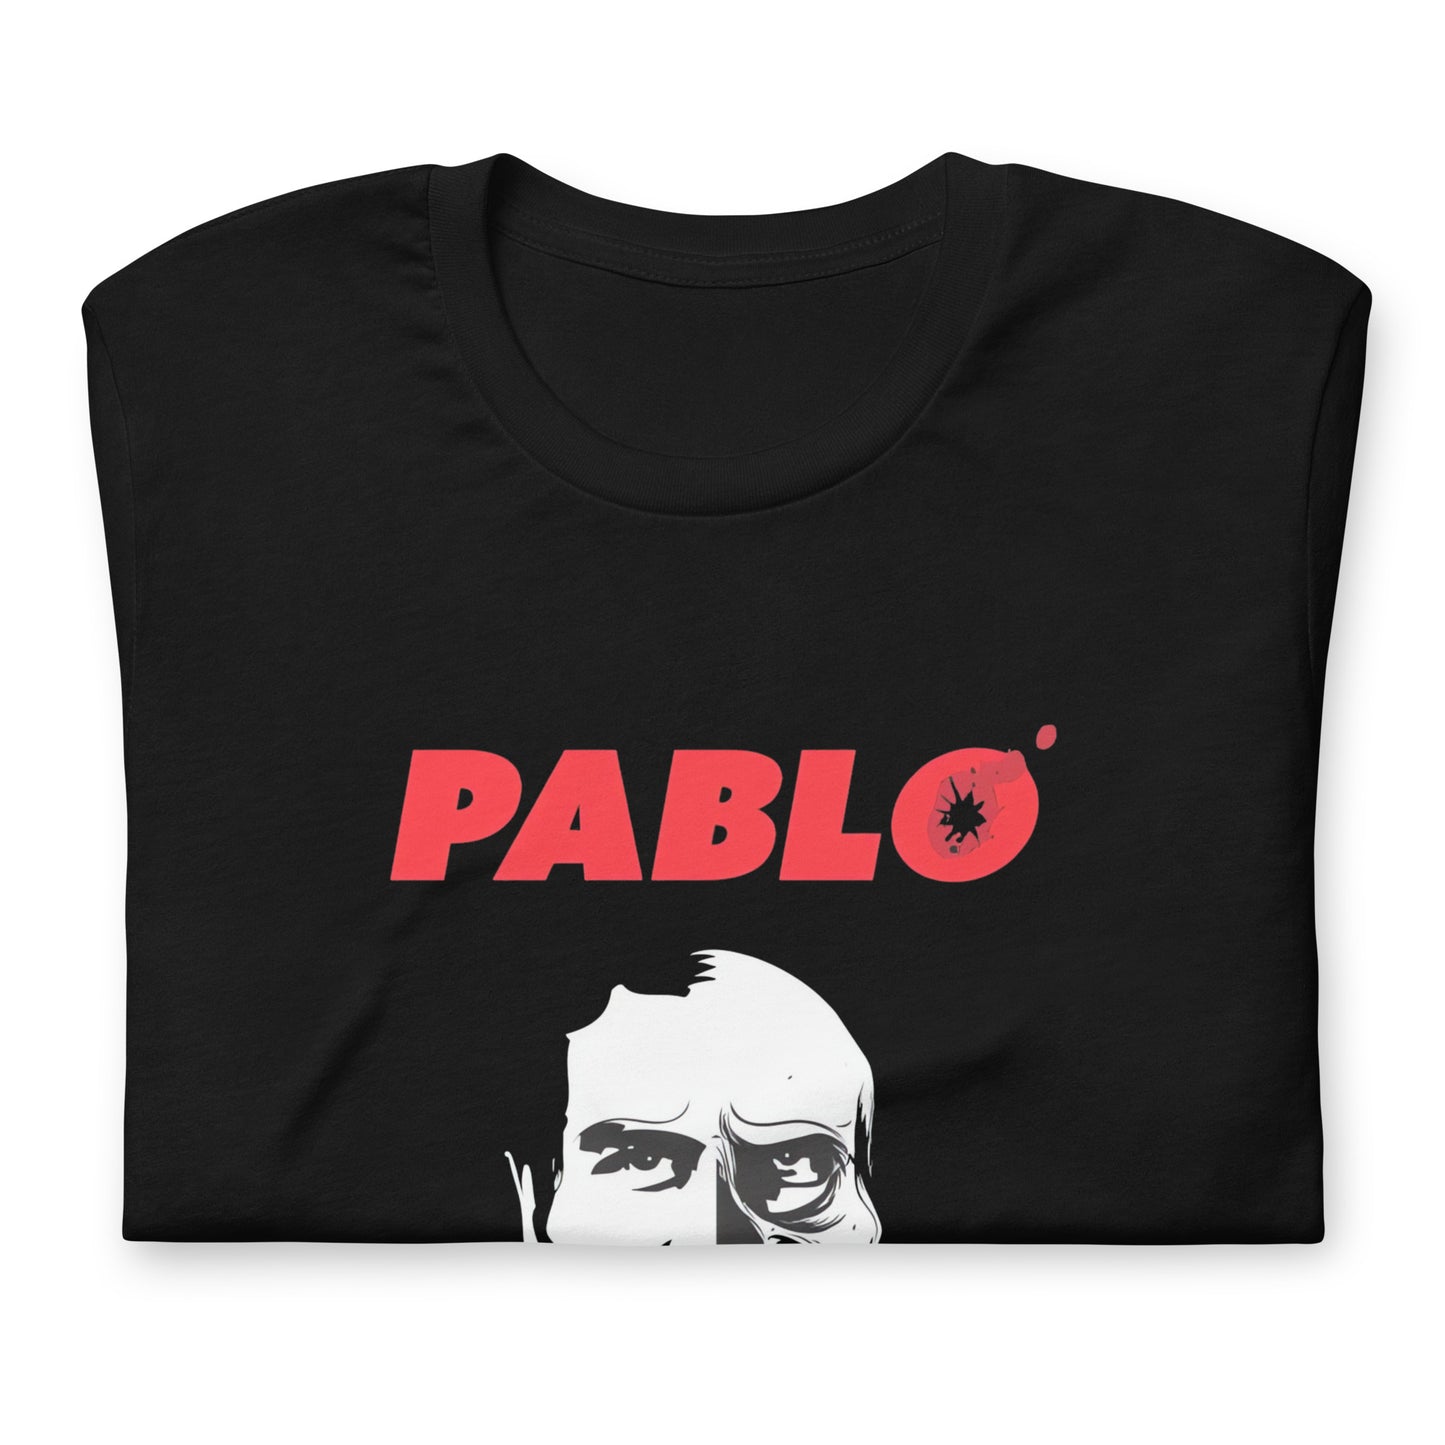 Muestra tu orgullo colombiano con la Camiseta Pablo el Patrón del Mal. Diseñada con los mejores materiales y un estampado duradero.